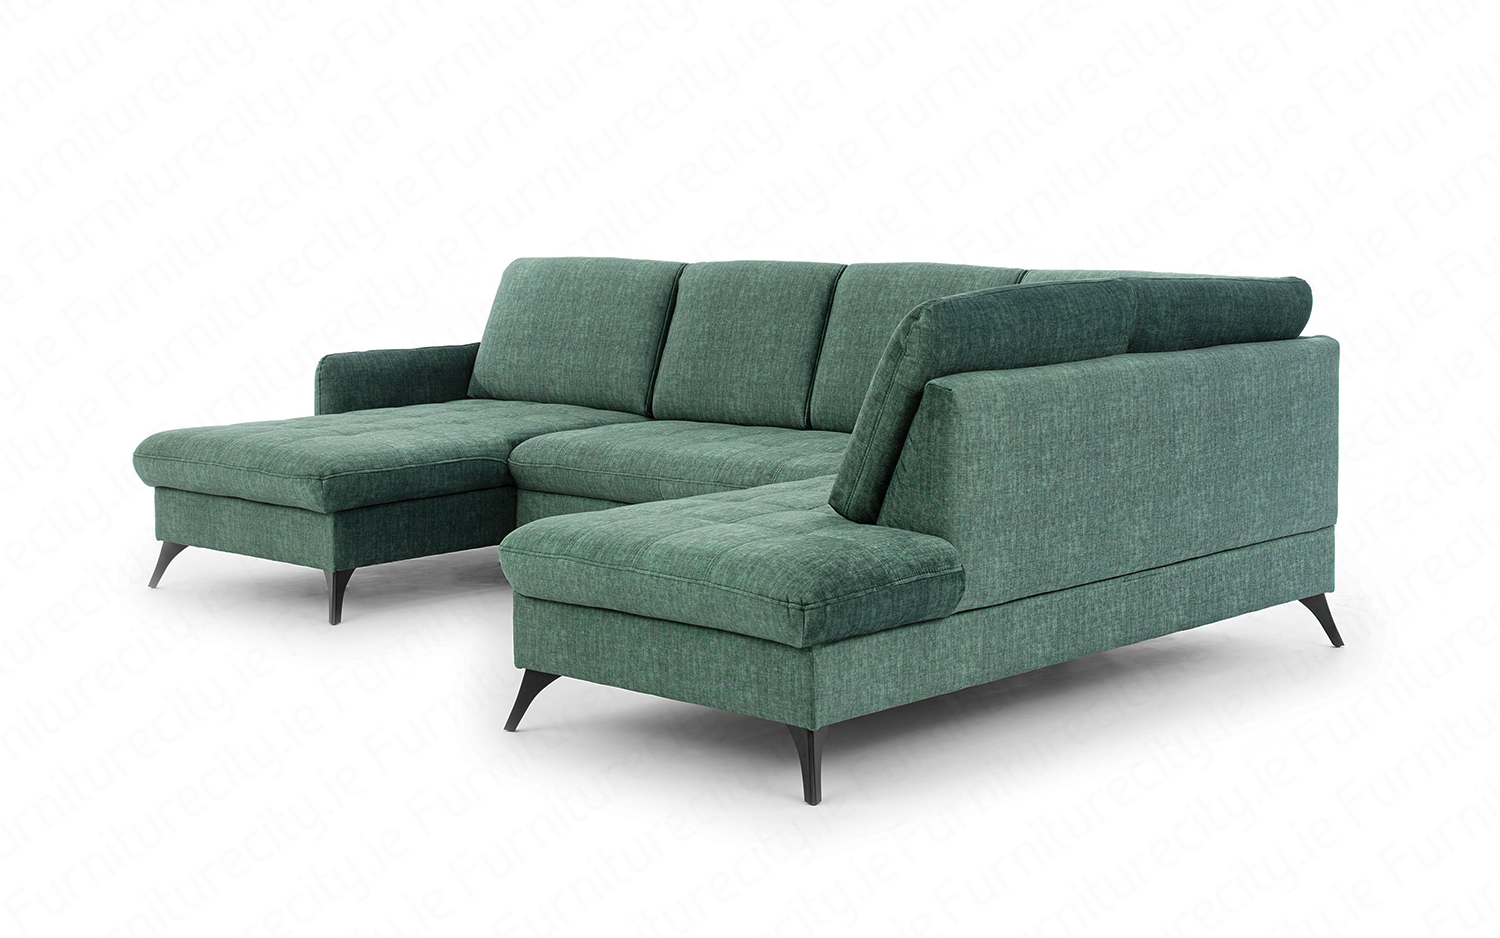 Sofa bed LORI U-SHAPE by Furniturecity.ie